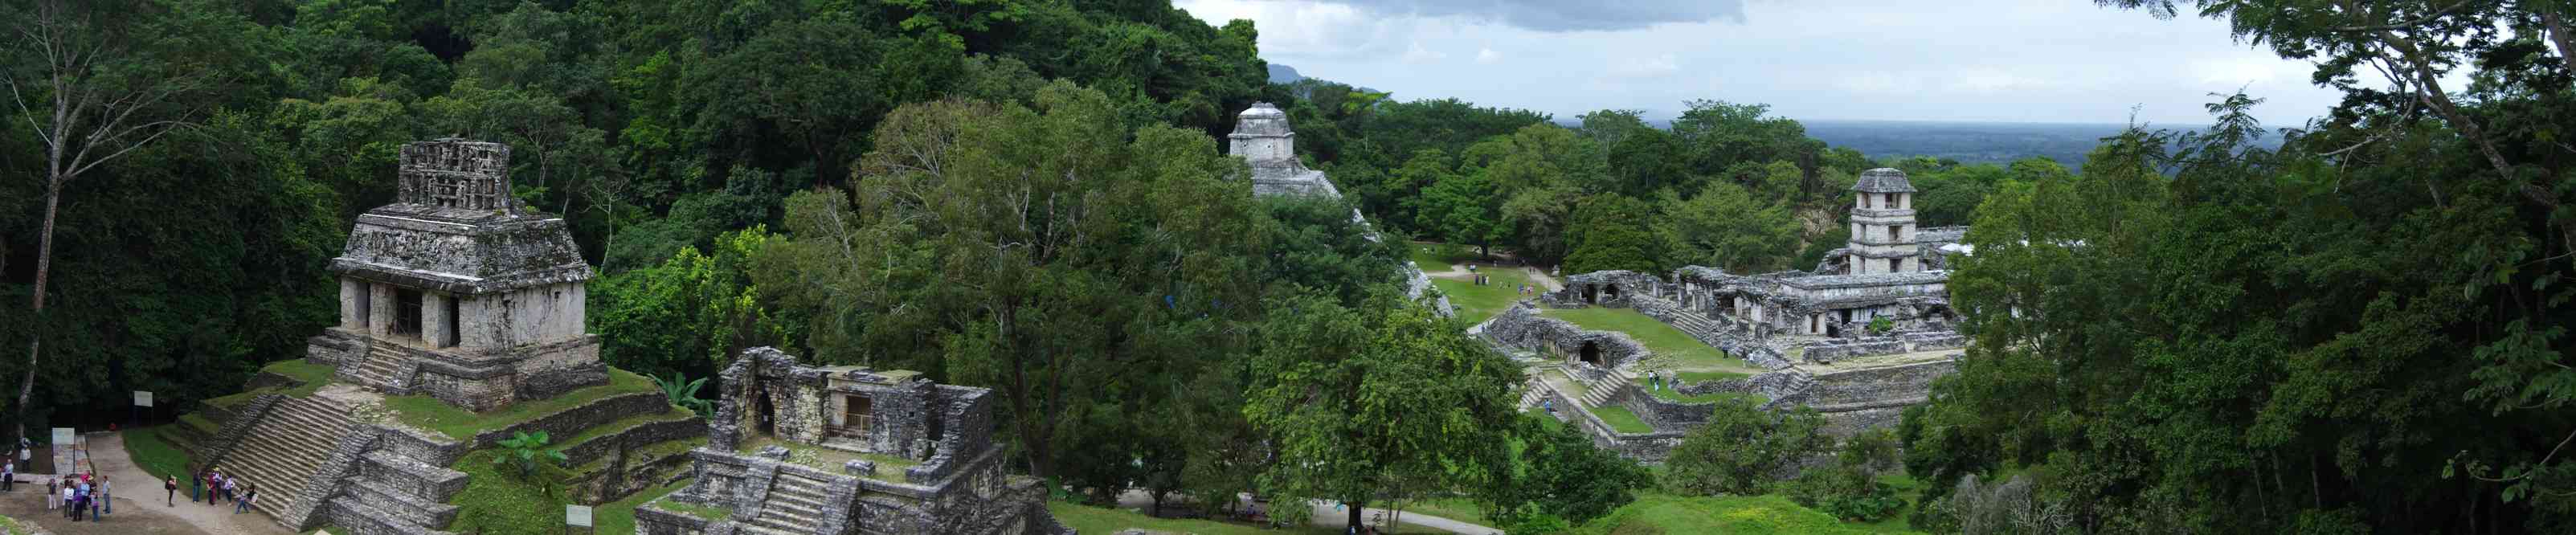 Palenque (panoramique), le 23 janvier 2016